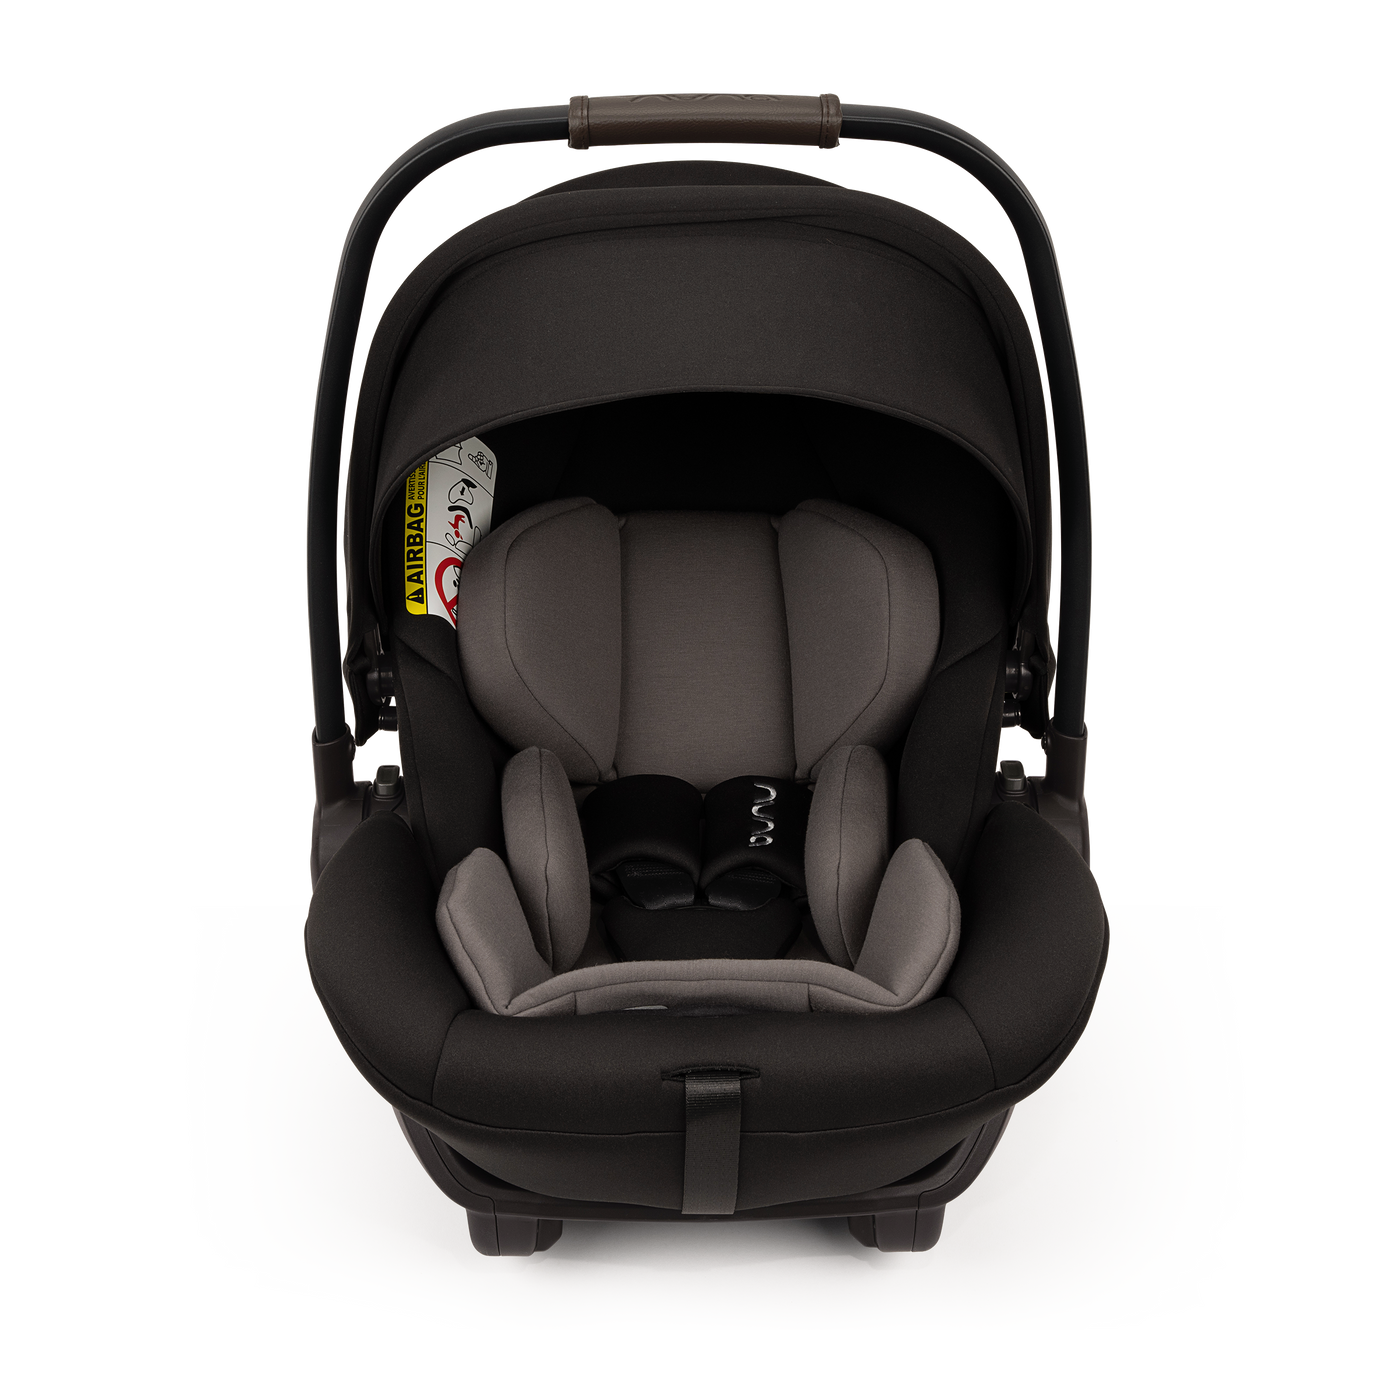 Nuna ARRA Next i-Size Infant Car Seat- Caviar